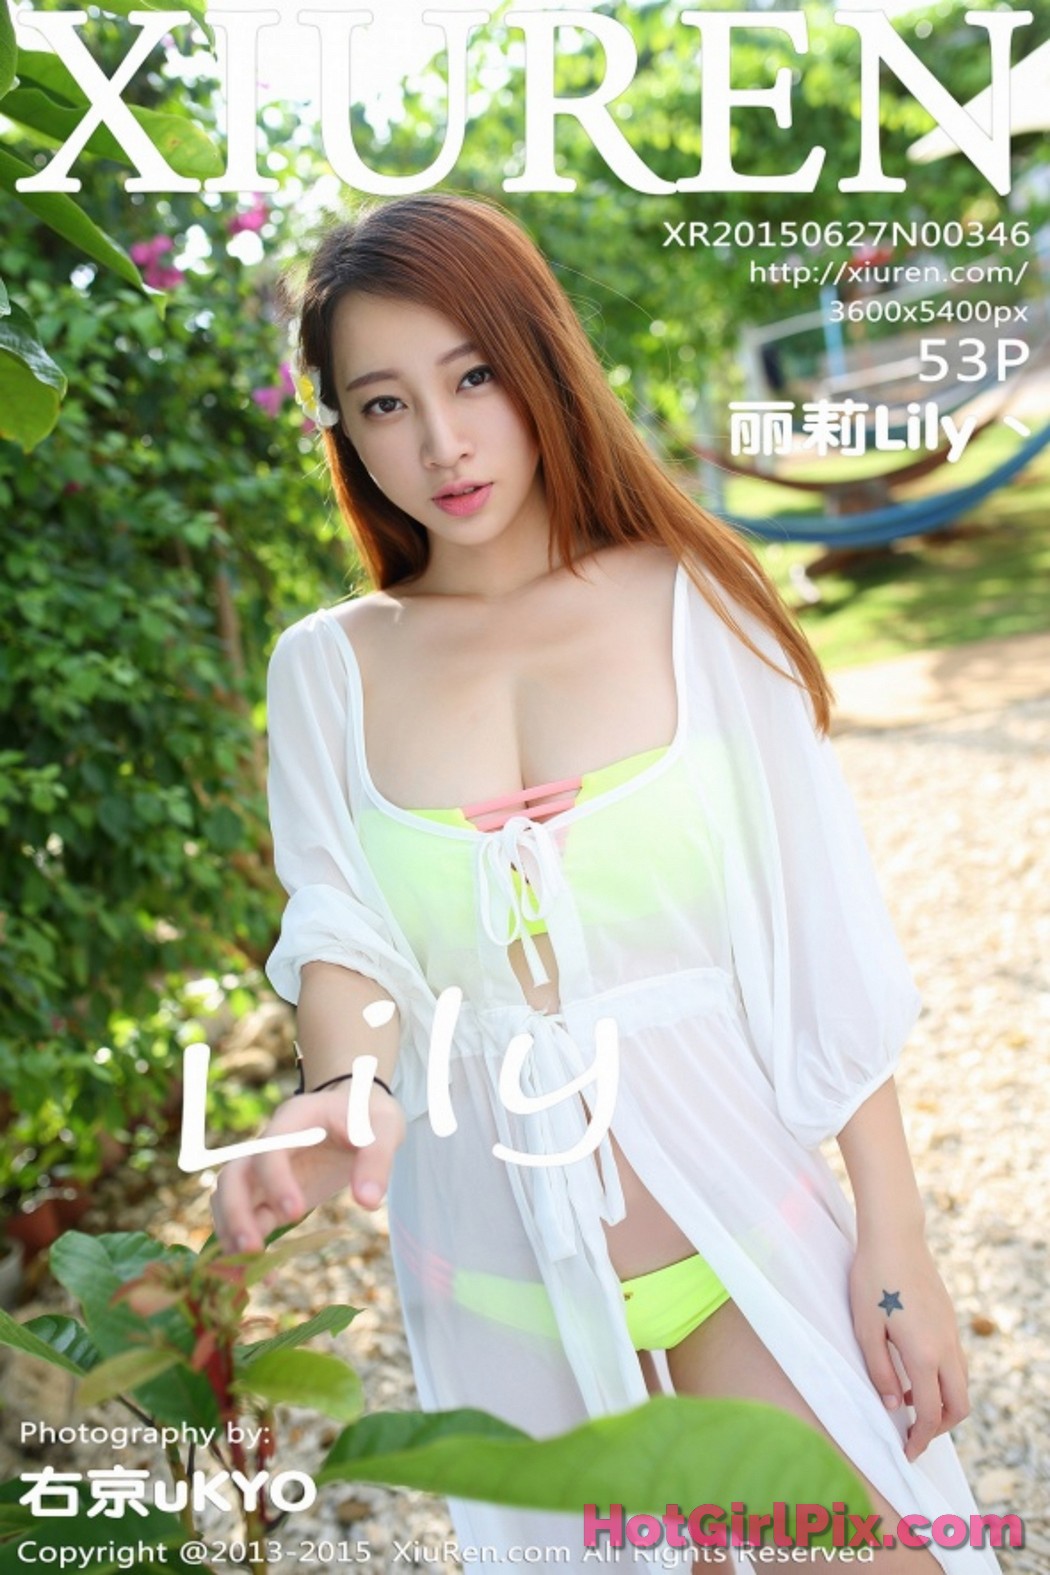 [XIUREN] No.346 丽莉Lily丶 Cover Photo